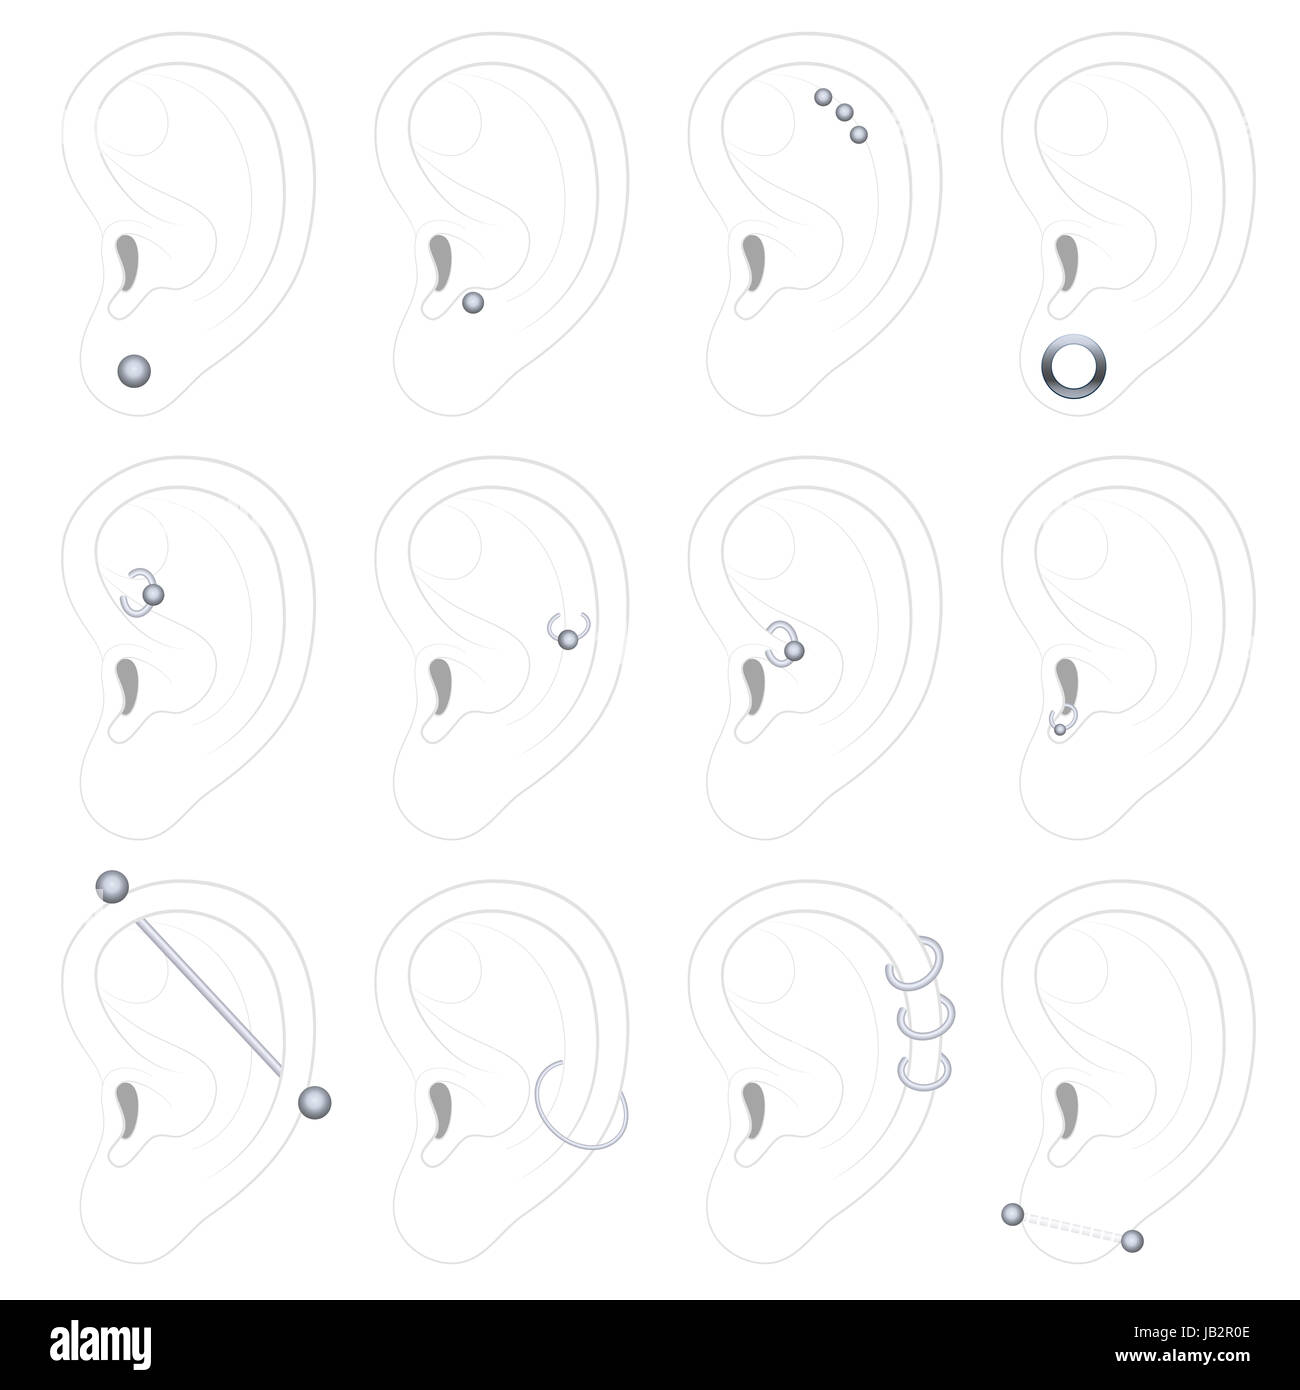 Ohr-piercing Beispiele - zwölf verschiedene Arten - Abbildung auf weißem Hintergrund. Stockfoto